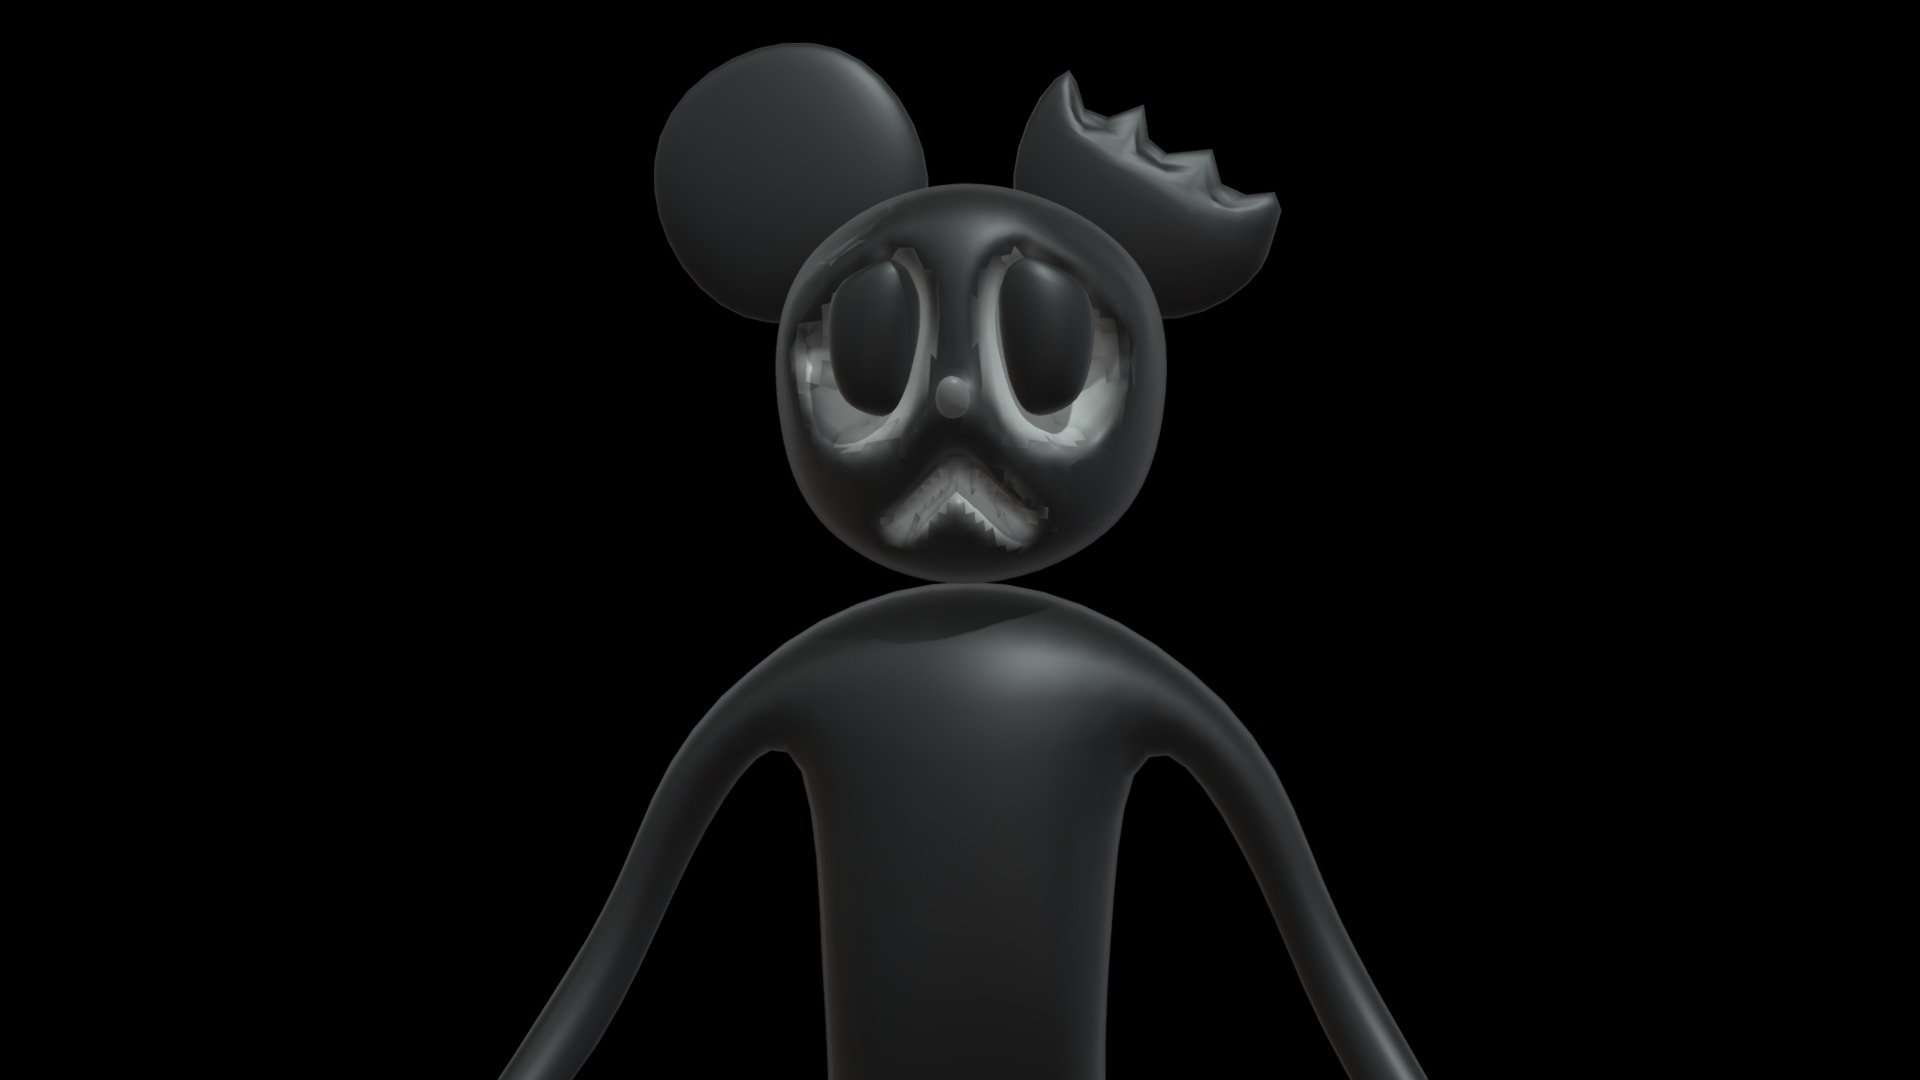 Cartoon Mouse - Download Free 3D model by TalkingBenBecomingUncanny 3d model